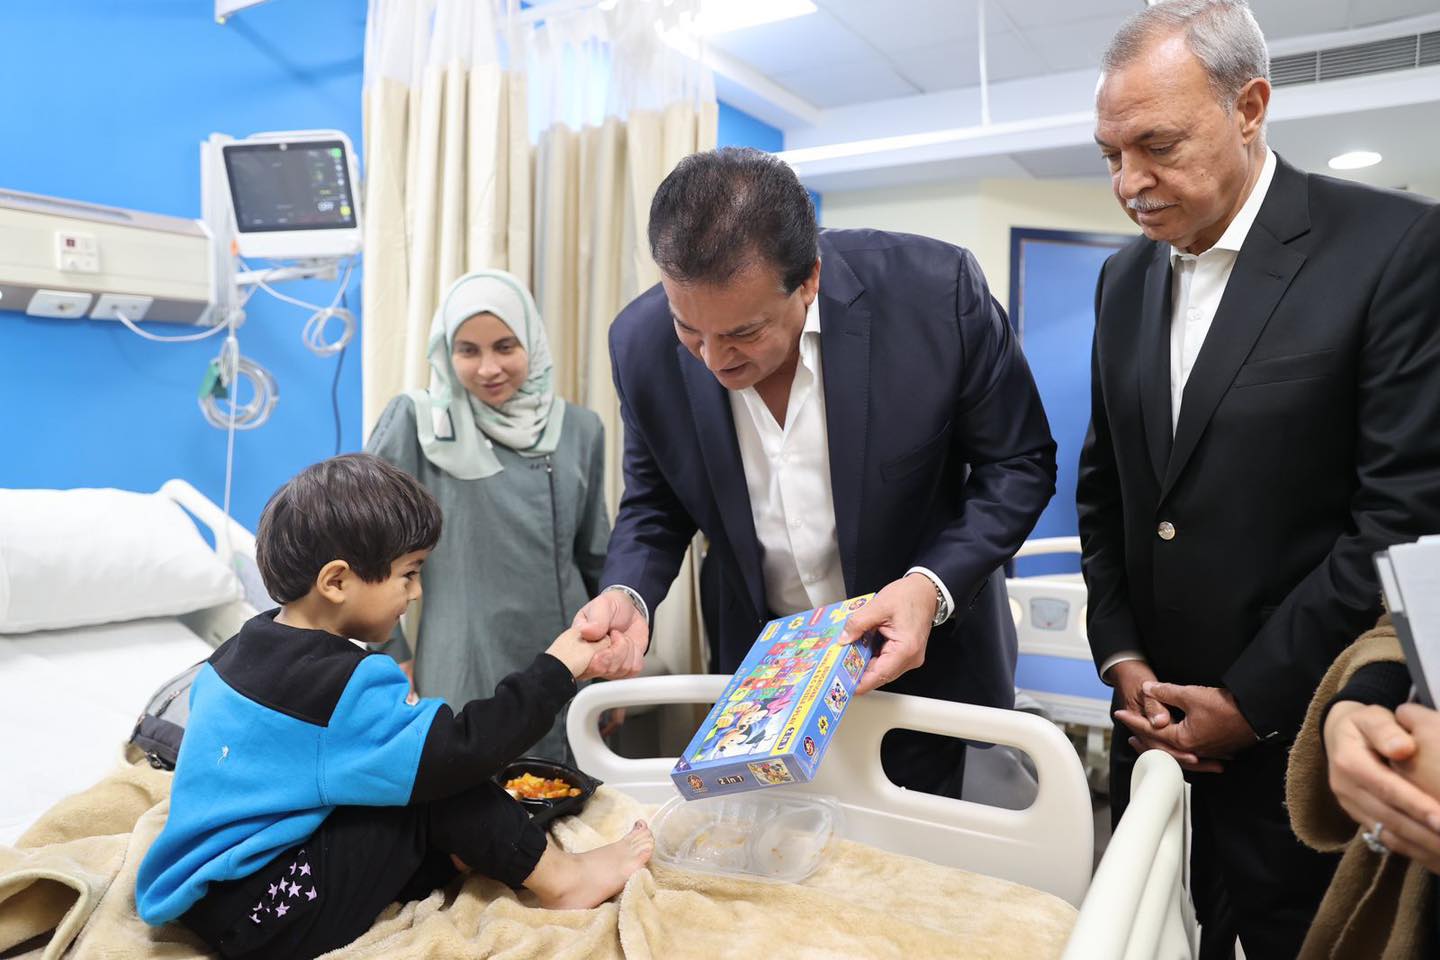 وزير الصحة يفتتح مركز للأطفال بالقليوبية يهدف لعلاج 1000 طفل فلسطيني 1